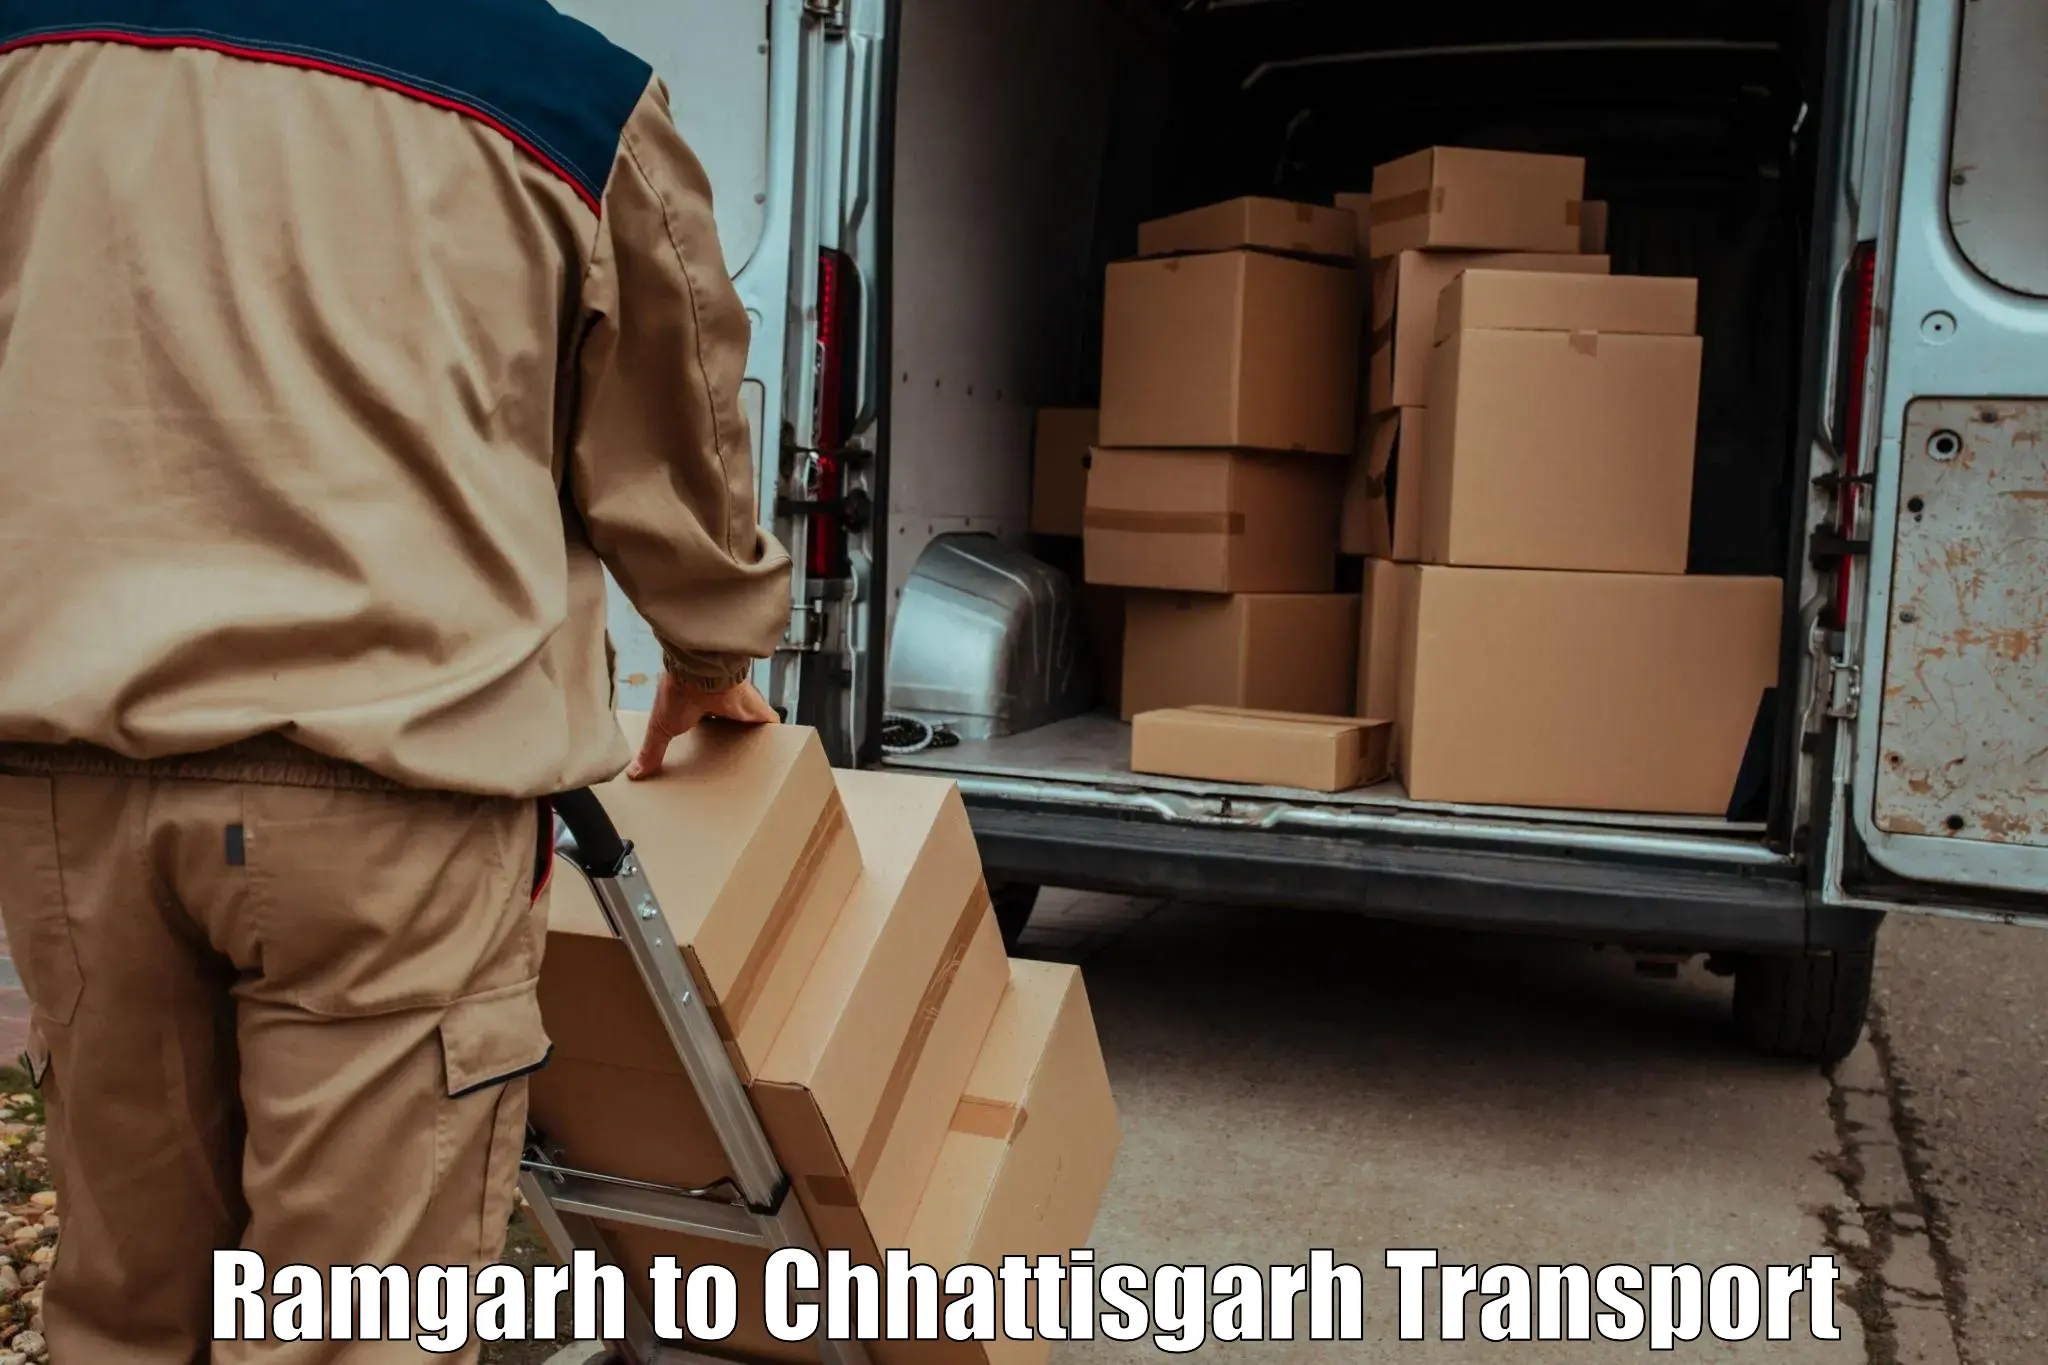 Daily parcel service transport in Ramgarh to Wadrafnagar